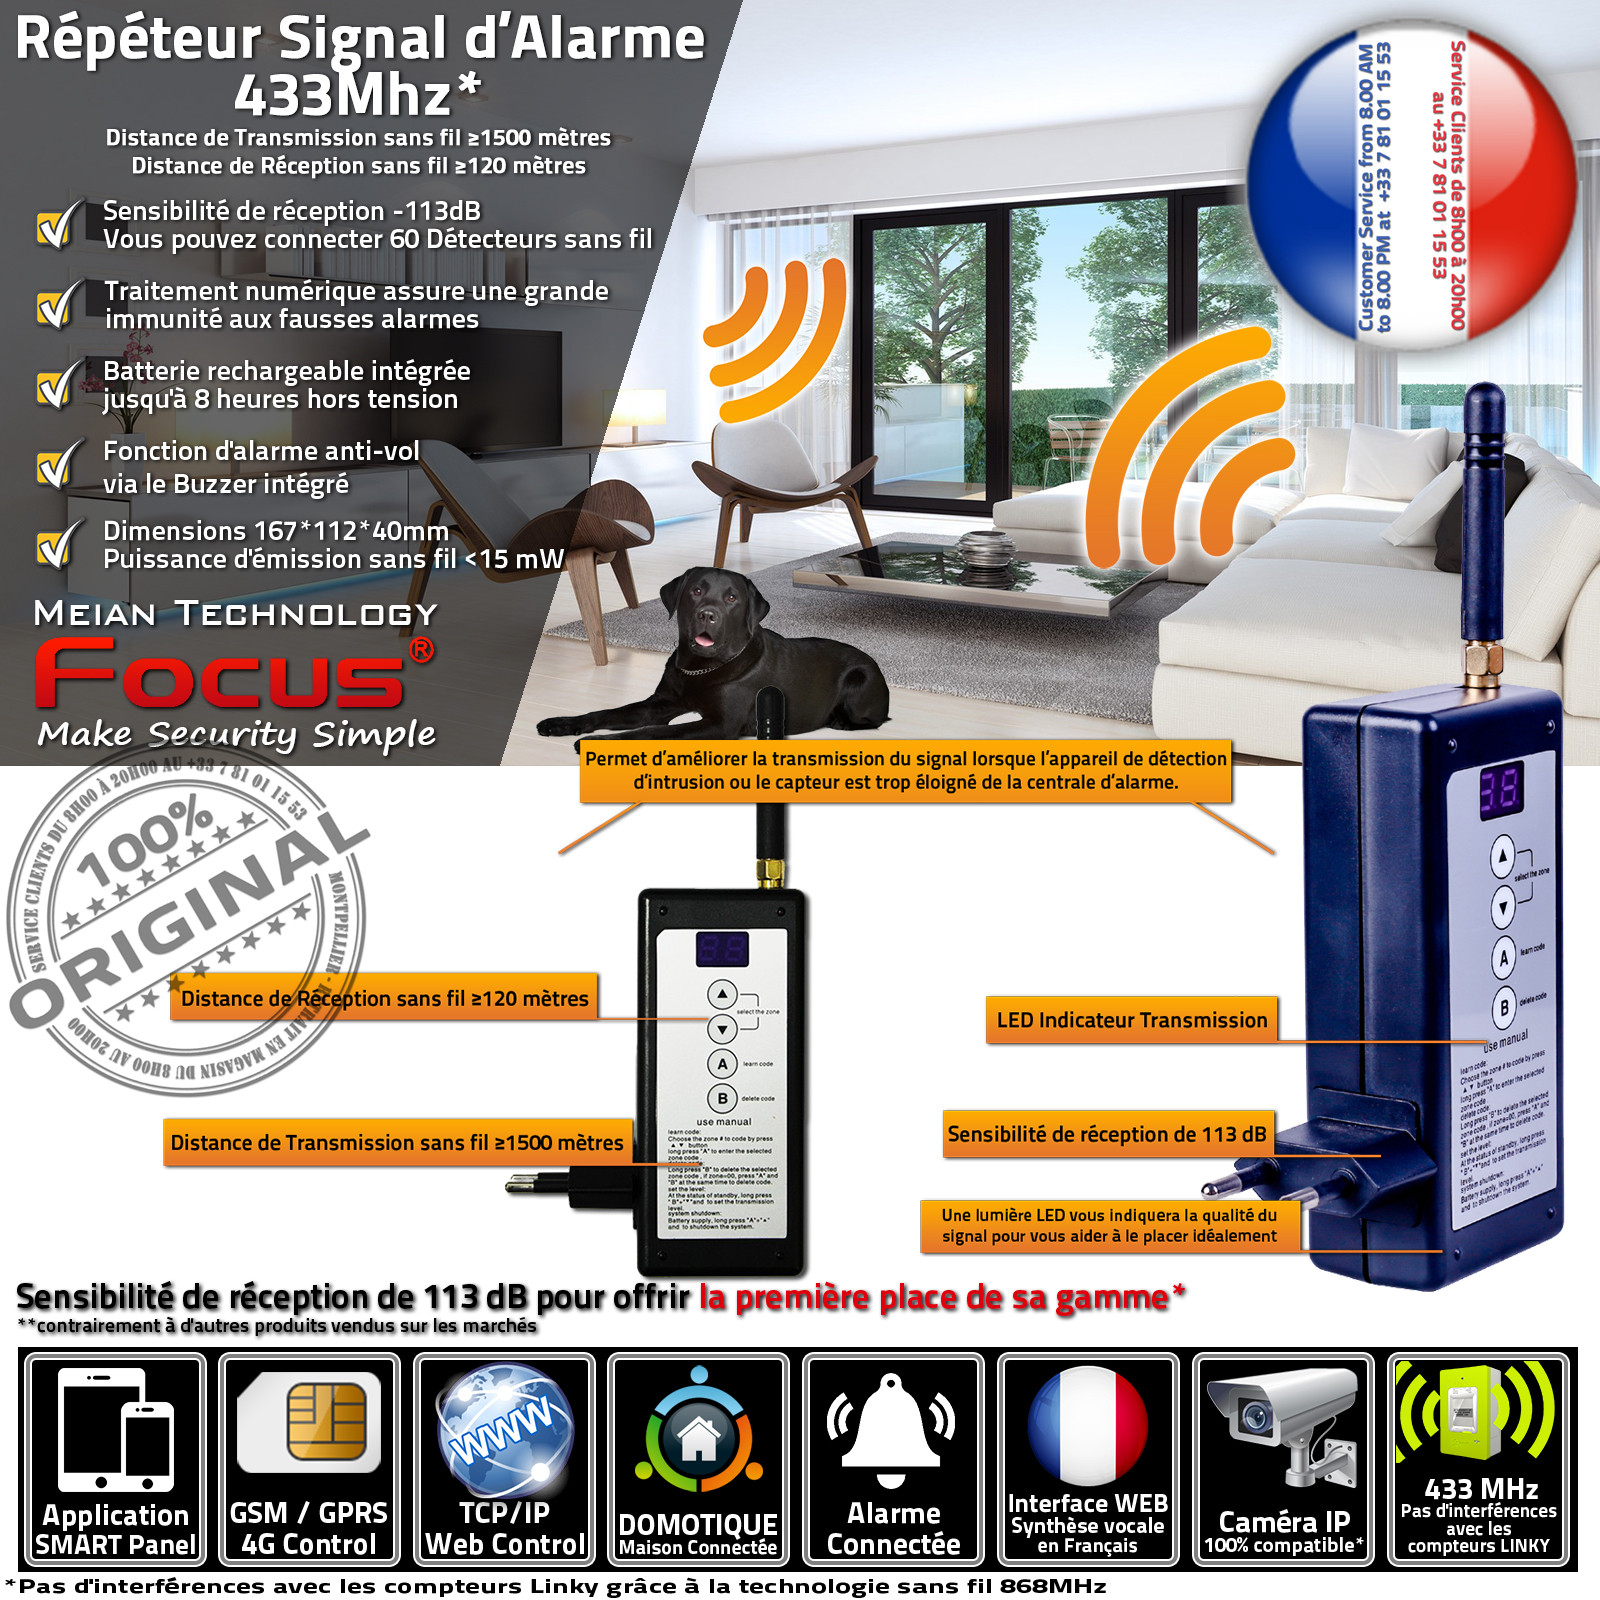 PB-204R 433MHz Répéteur Signal d'alarme sans fil Amplificateur Distance réception / émission